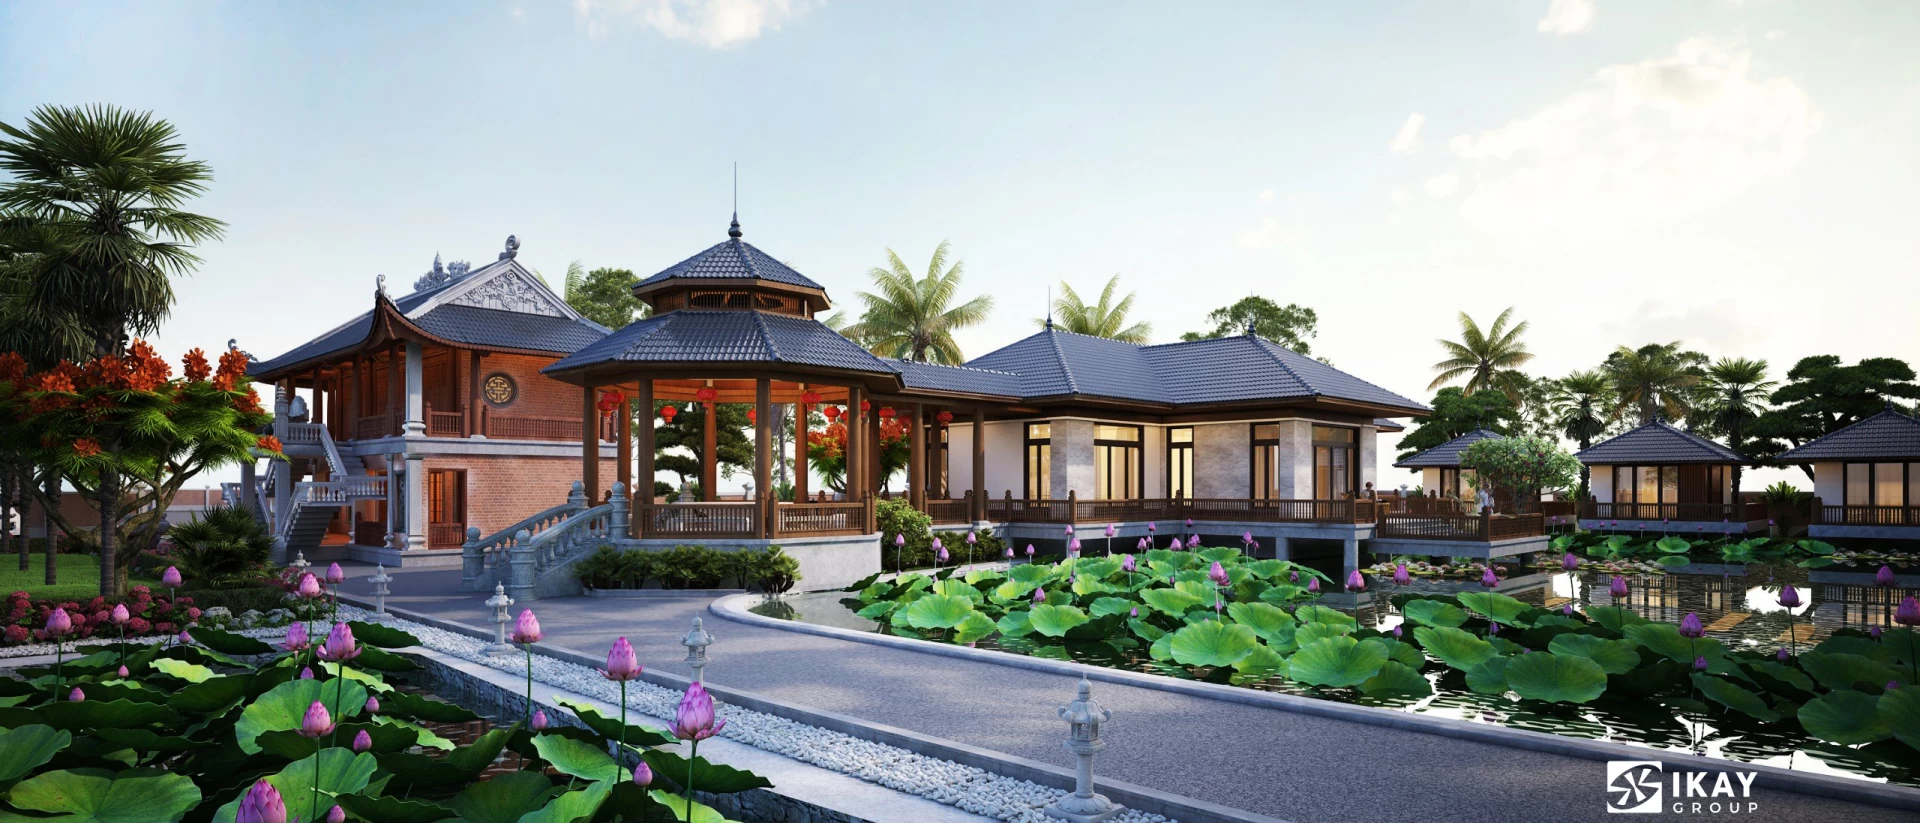 Dự án thiết kế kiến trúc homestay hồ câu thư giãn cho mr. Khôi tại Hà Nội